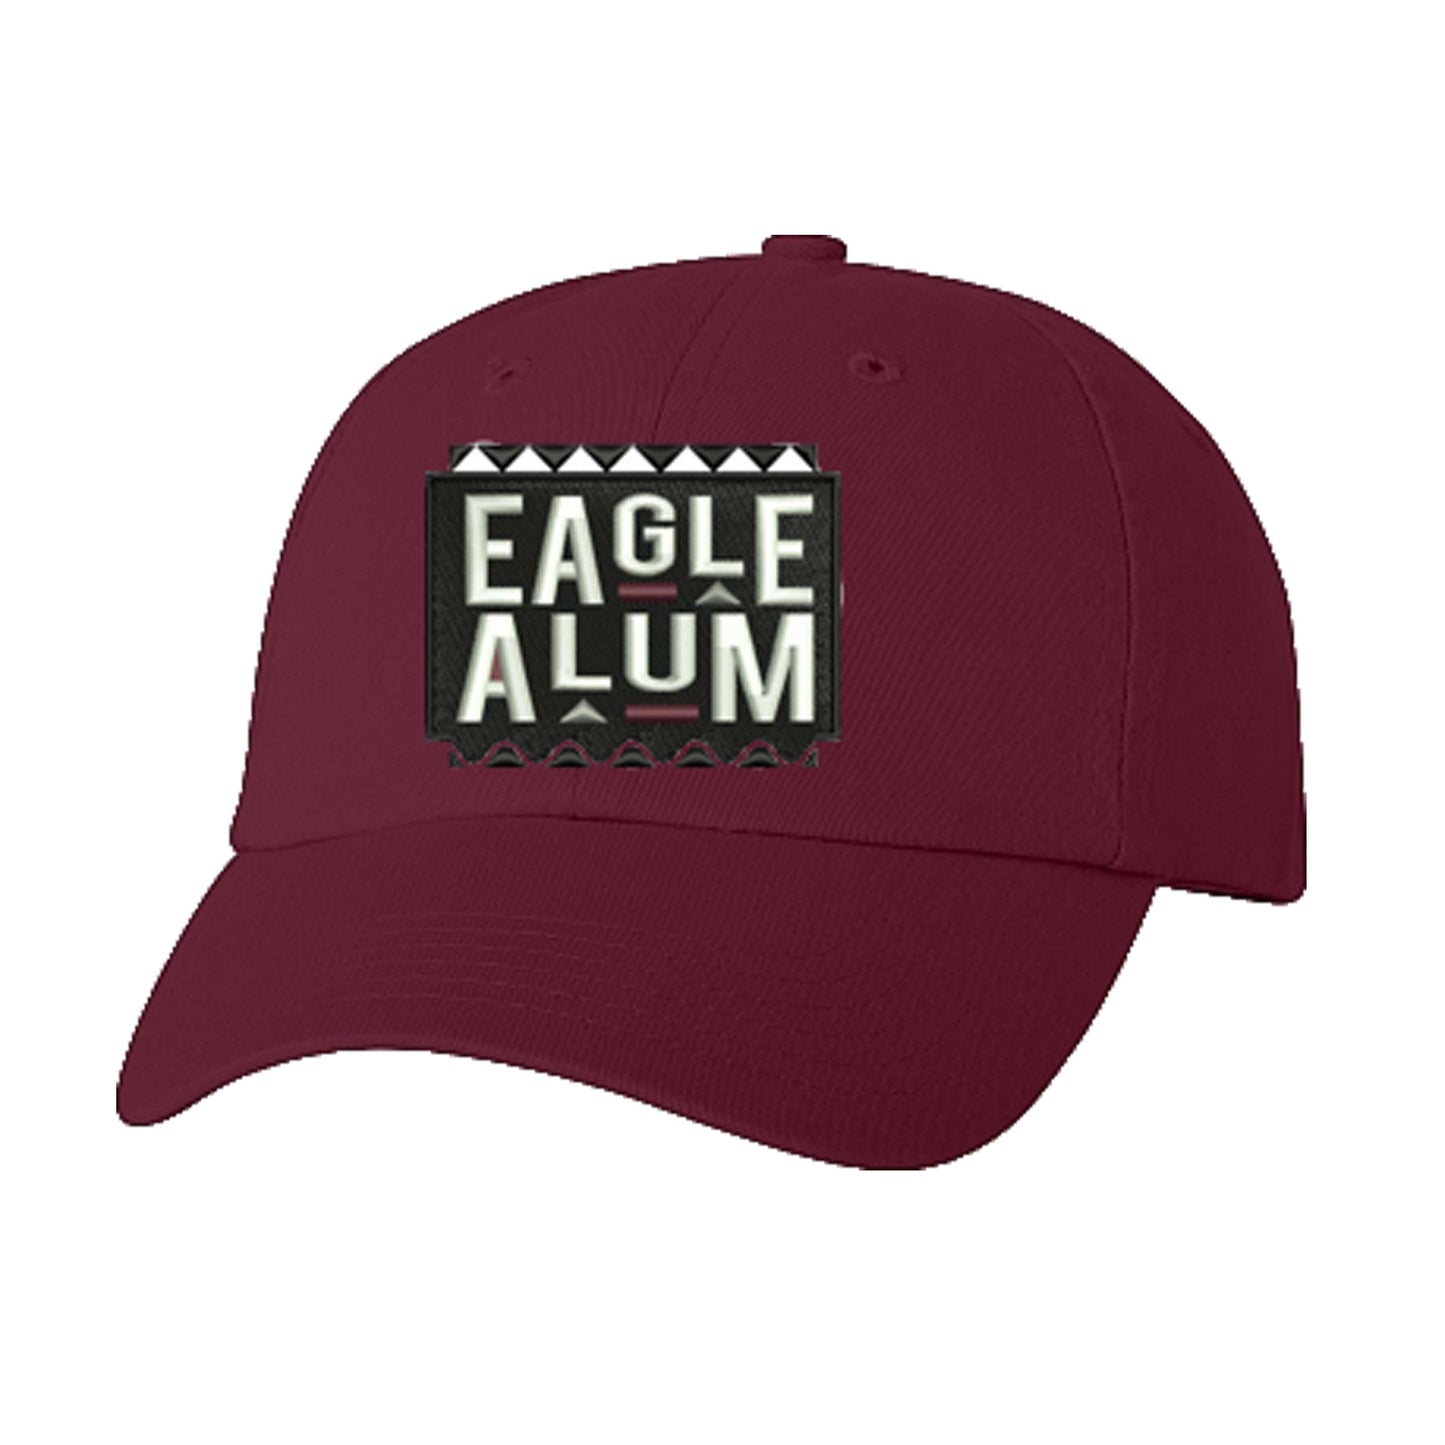 HBCU Grad | Eagle Alum | Ball Cap - Maroon